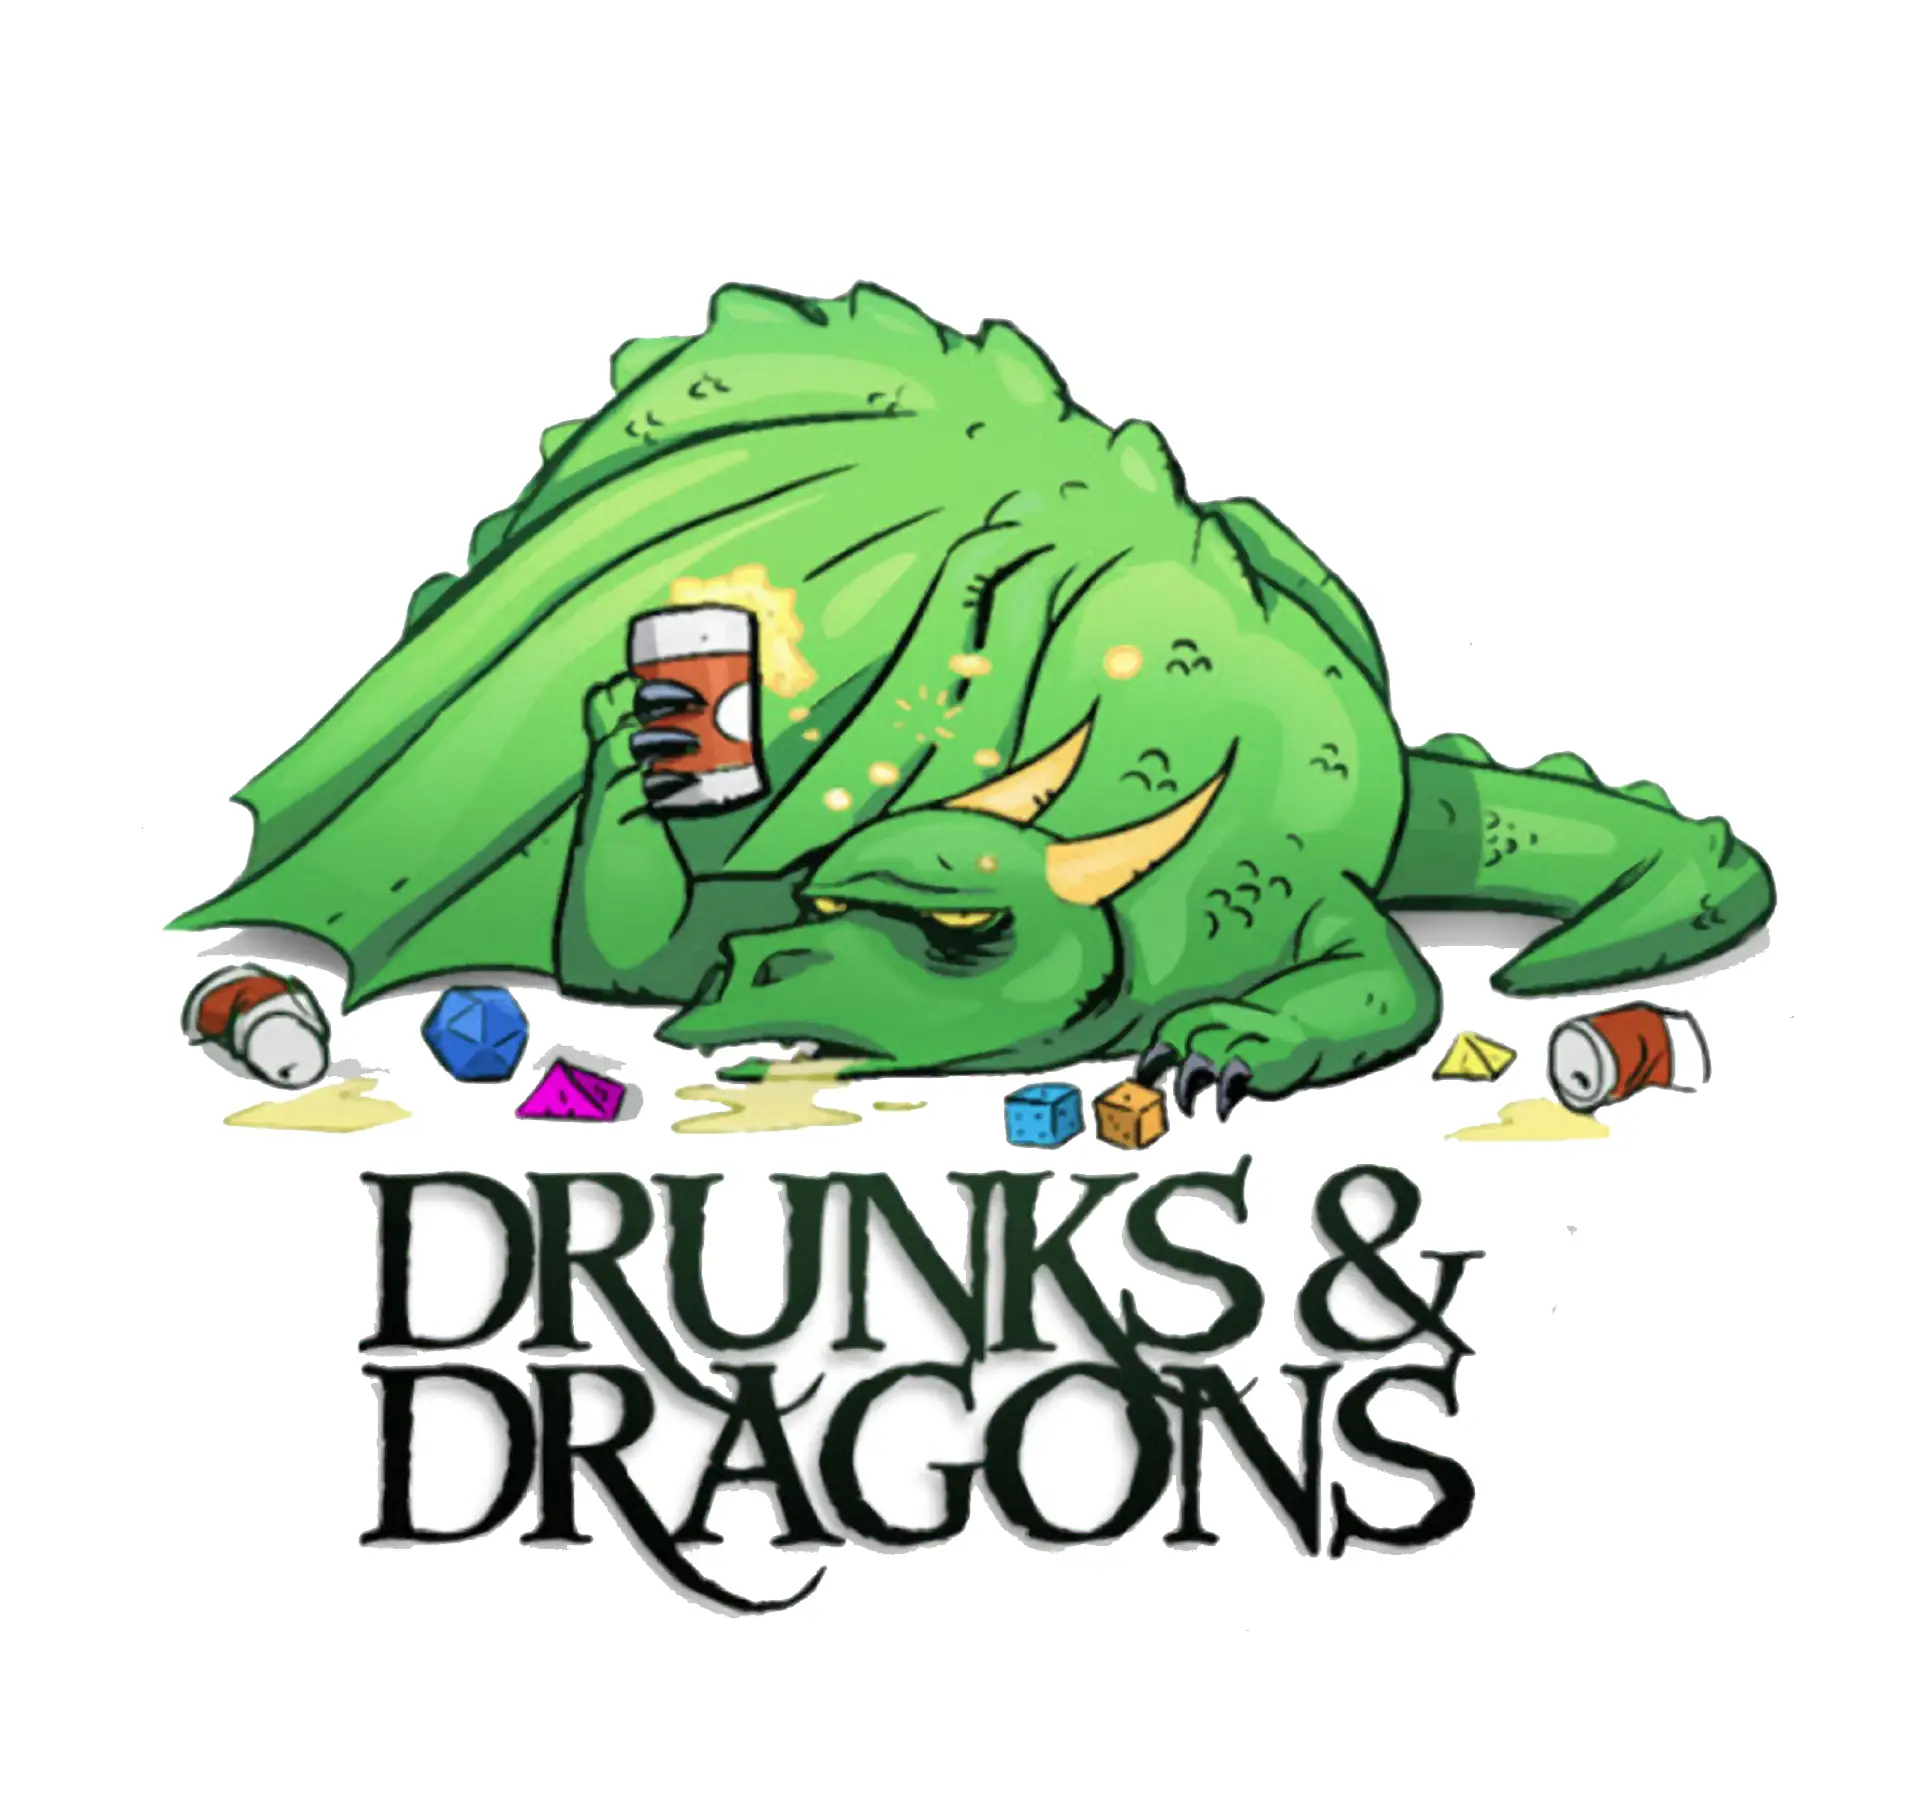 Logotipo dos Drunks and Dragons com um dragão bêbado.